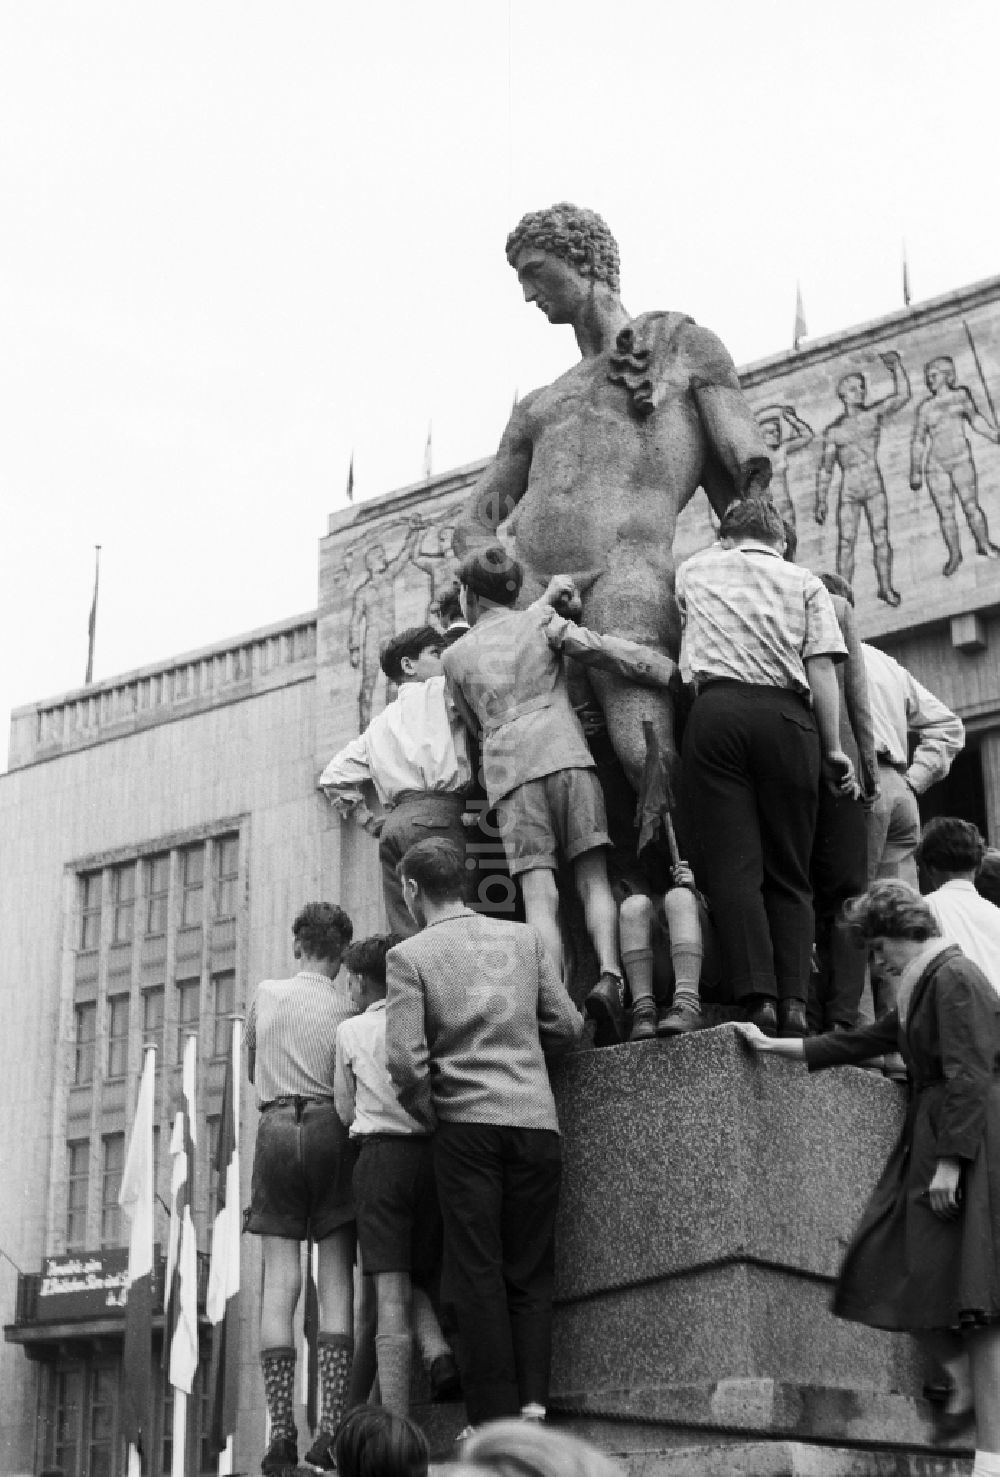 DDR-Bildarchiv: Berlin - Skulptur und Kopie einer spätklassizistischen männlichen Figur in Berlin, der ehemaligen Hauptstadt der DDR, Deutsche Demokratische Republik